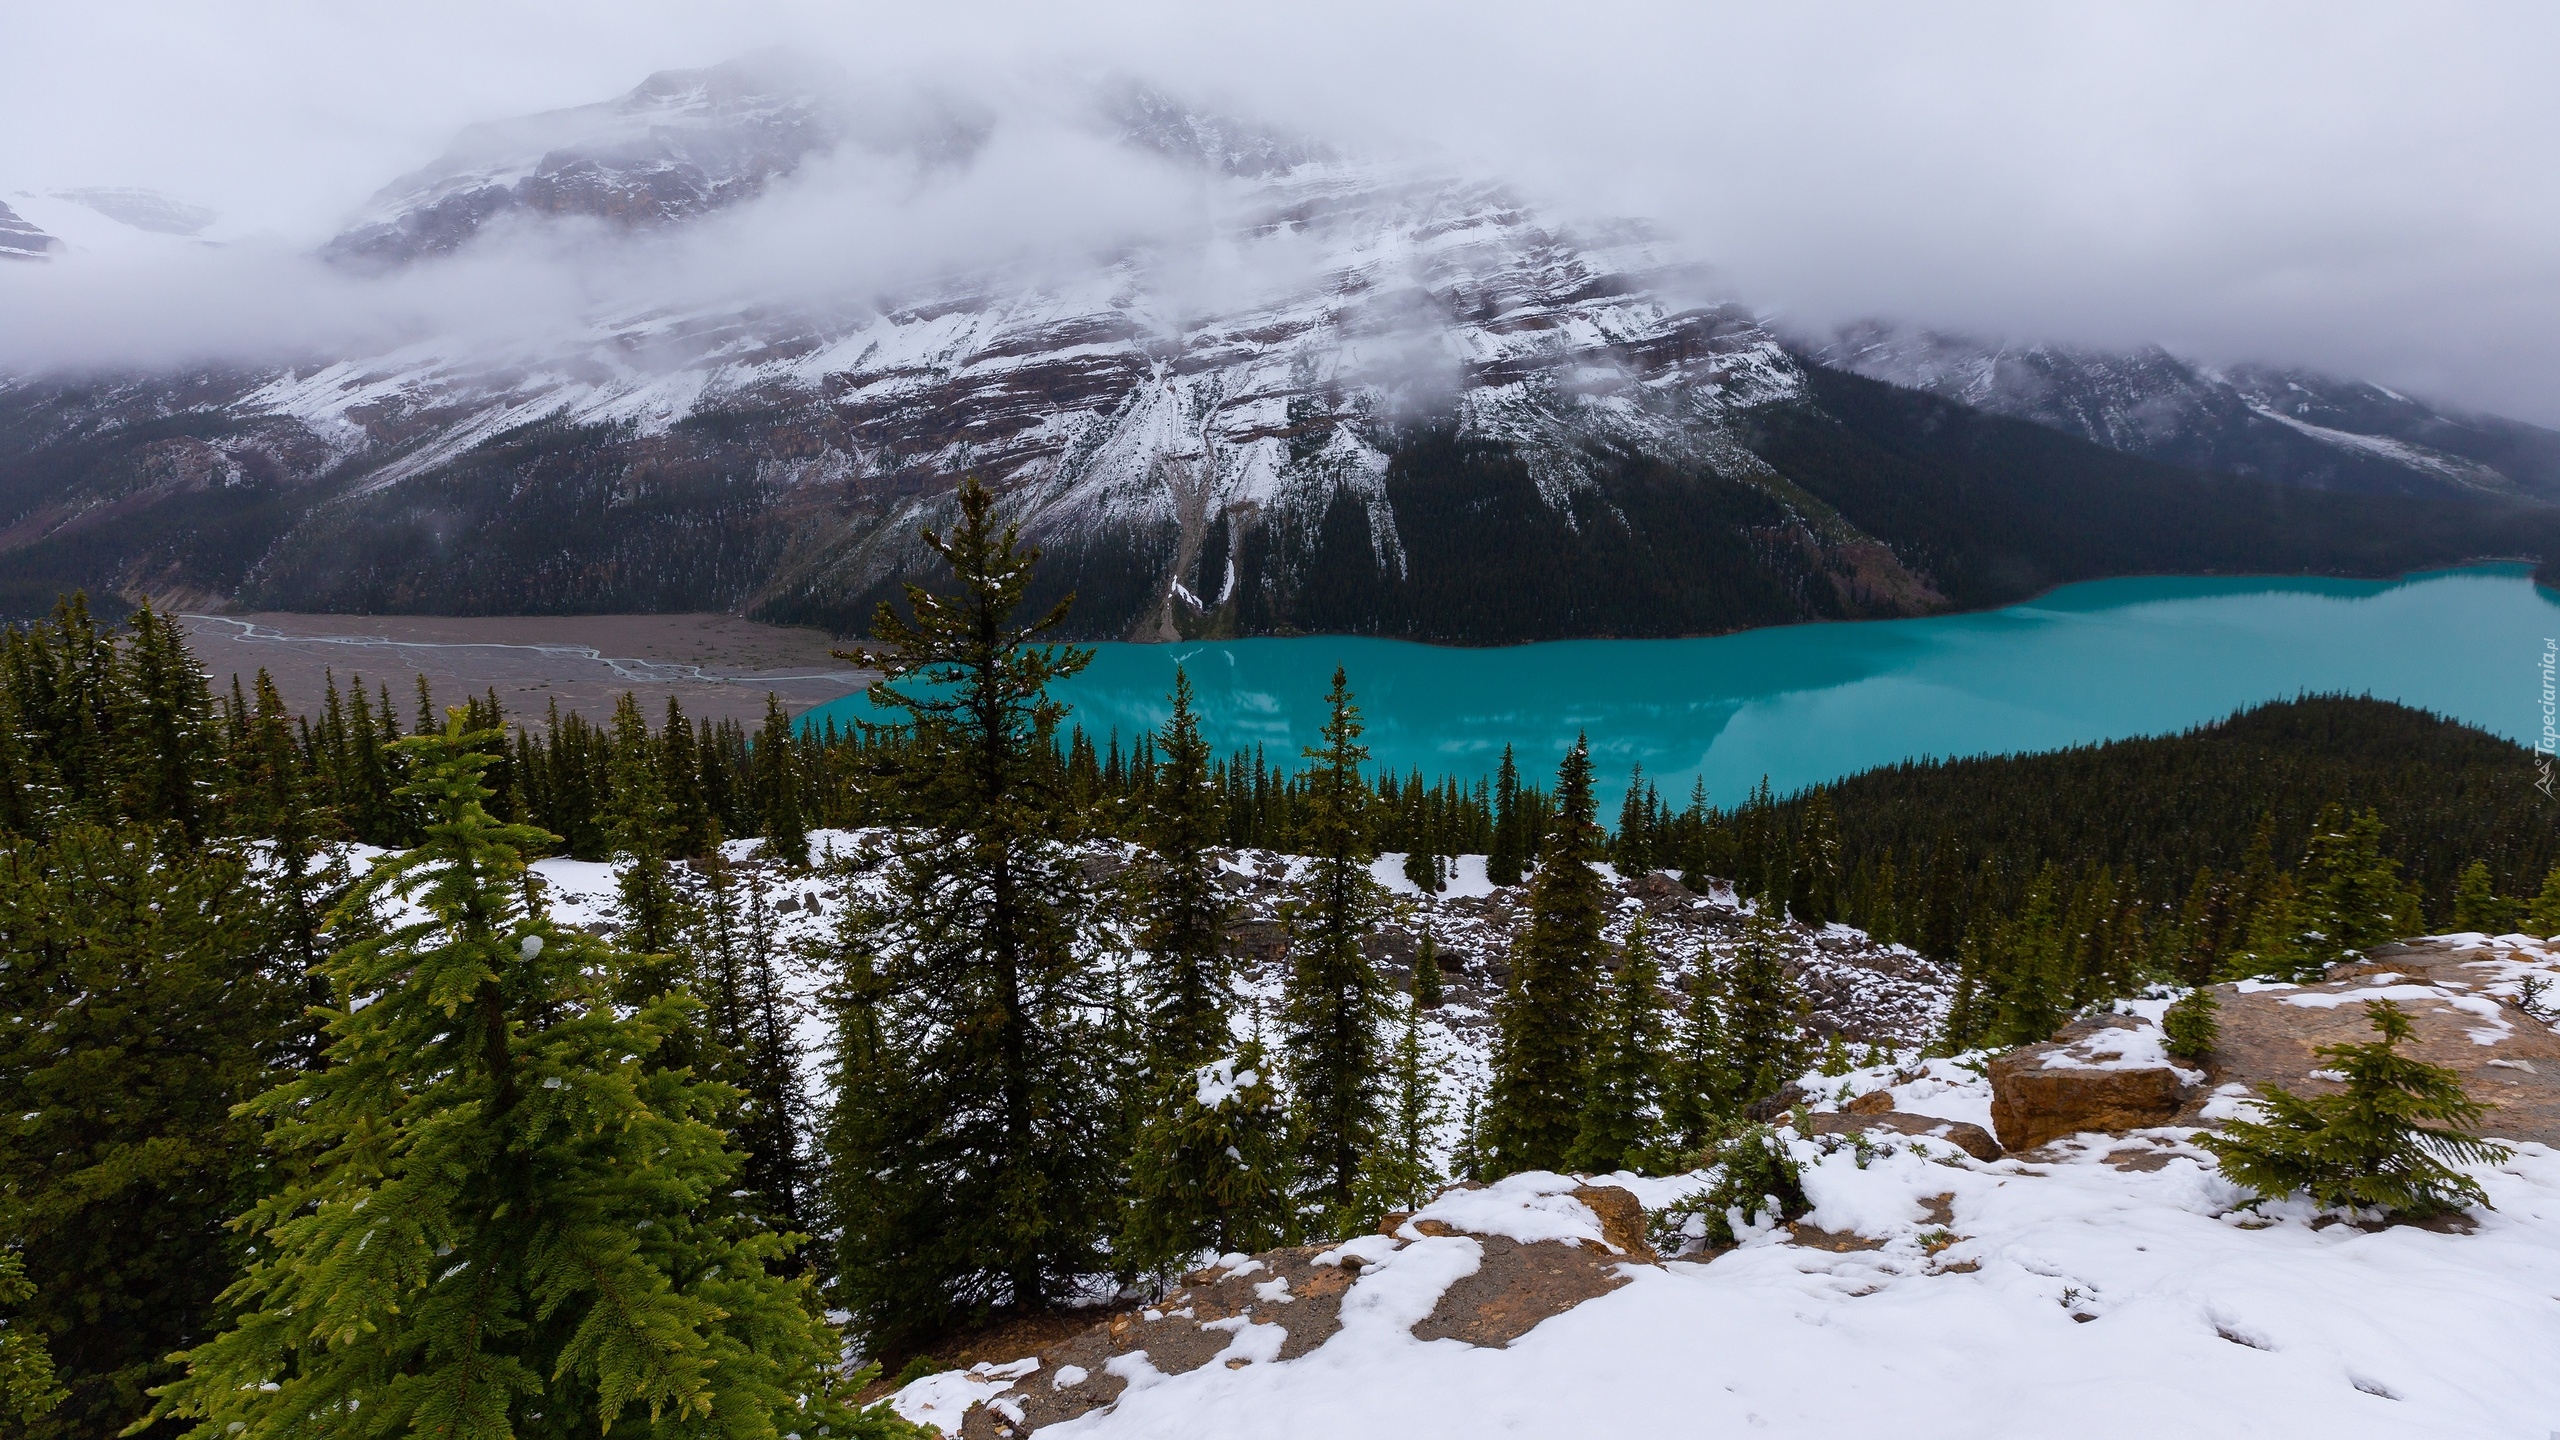 Park Narodowy Banff, Jezioro, Peyto Lake, Góry, Lasy, Drzewa, Śnieg, Alberta, Kanada